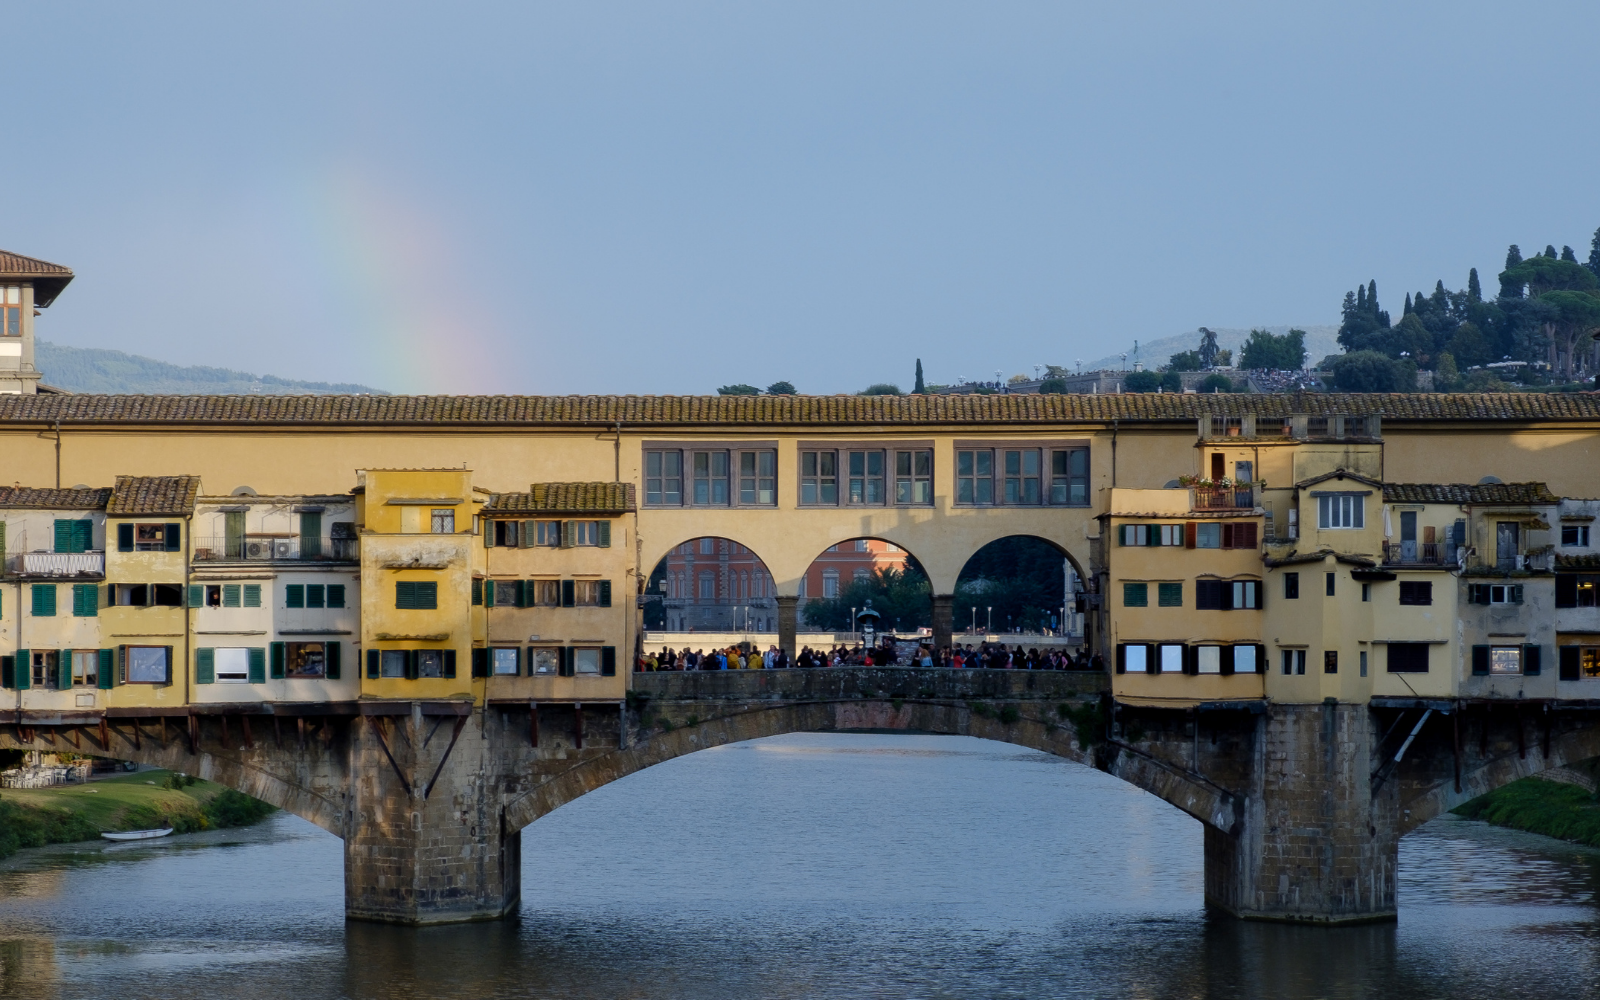 Firenze con un bellissimo arcobaleno